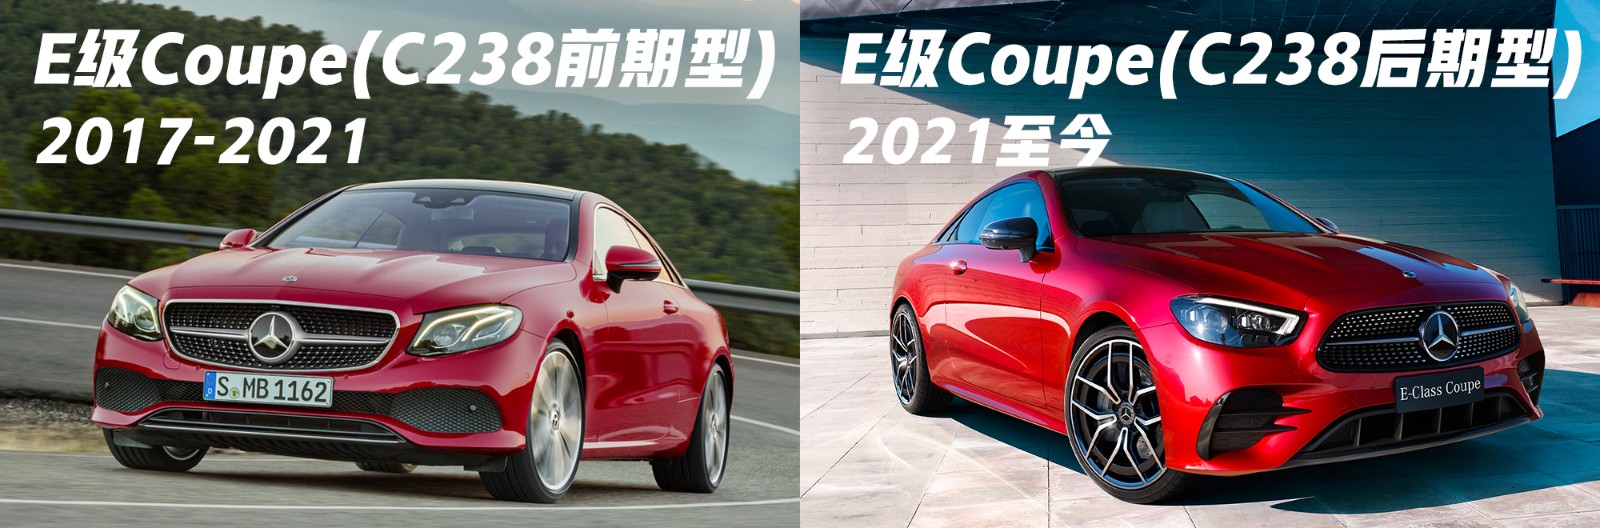 奔驰 CLE Coupé 车型 7 月 5 日全球首发